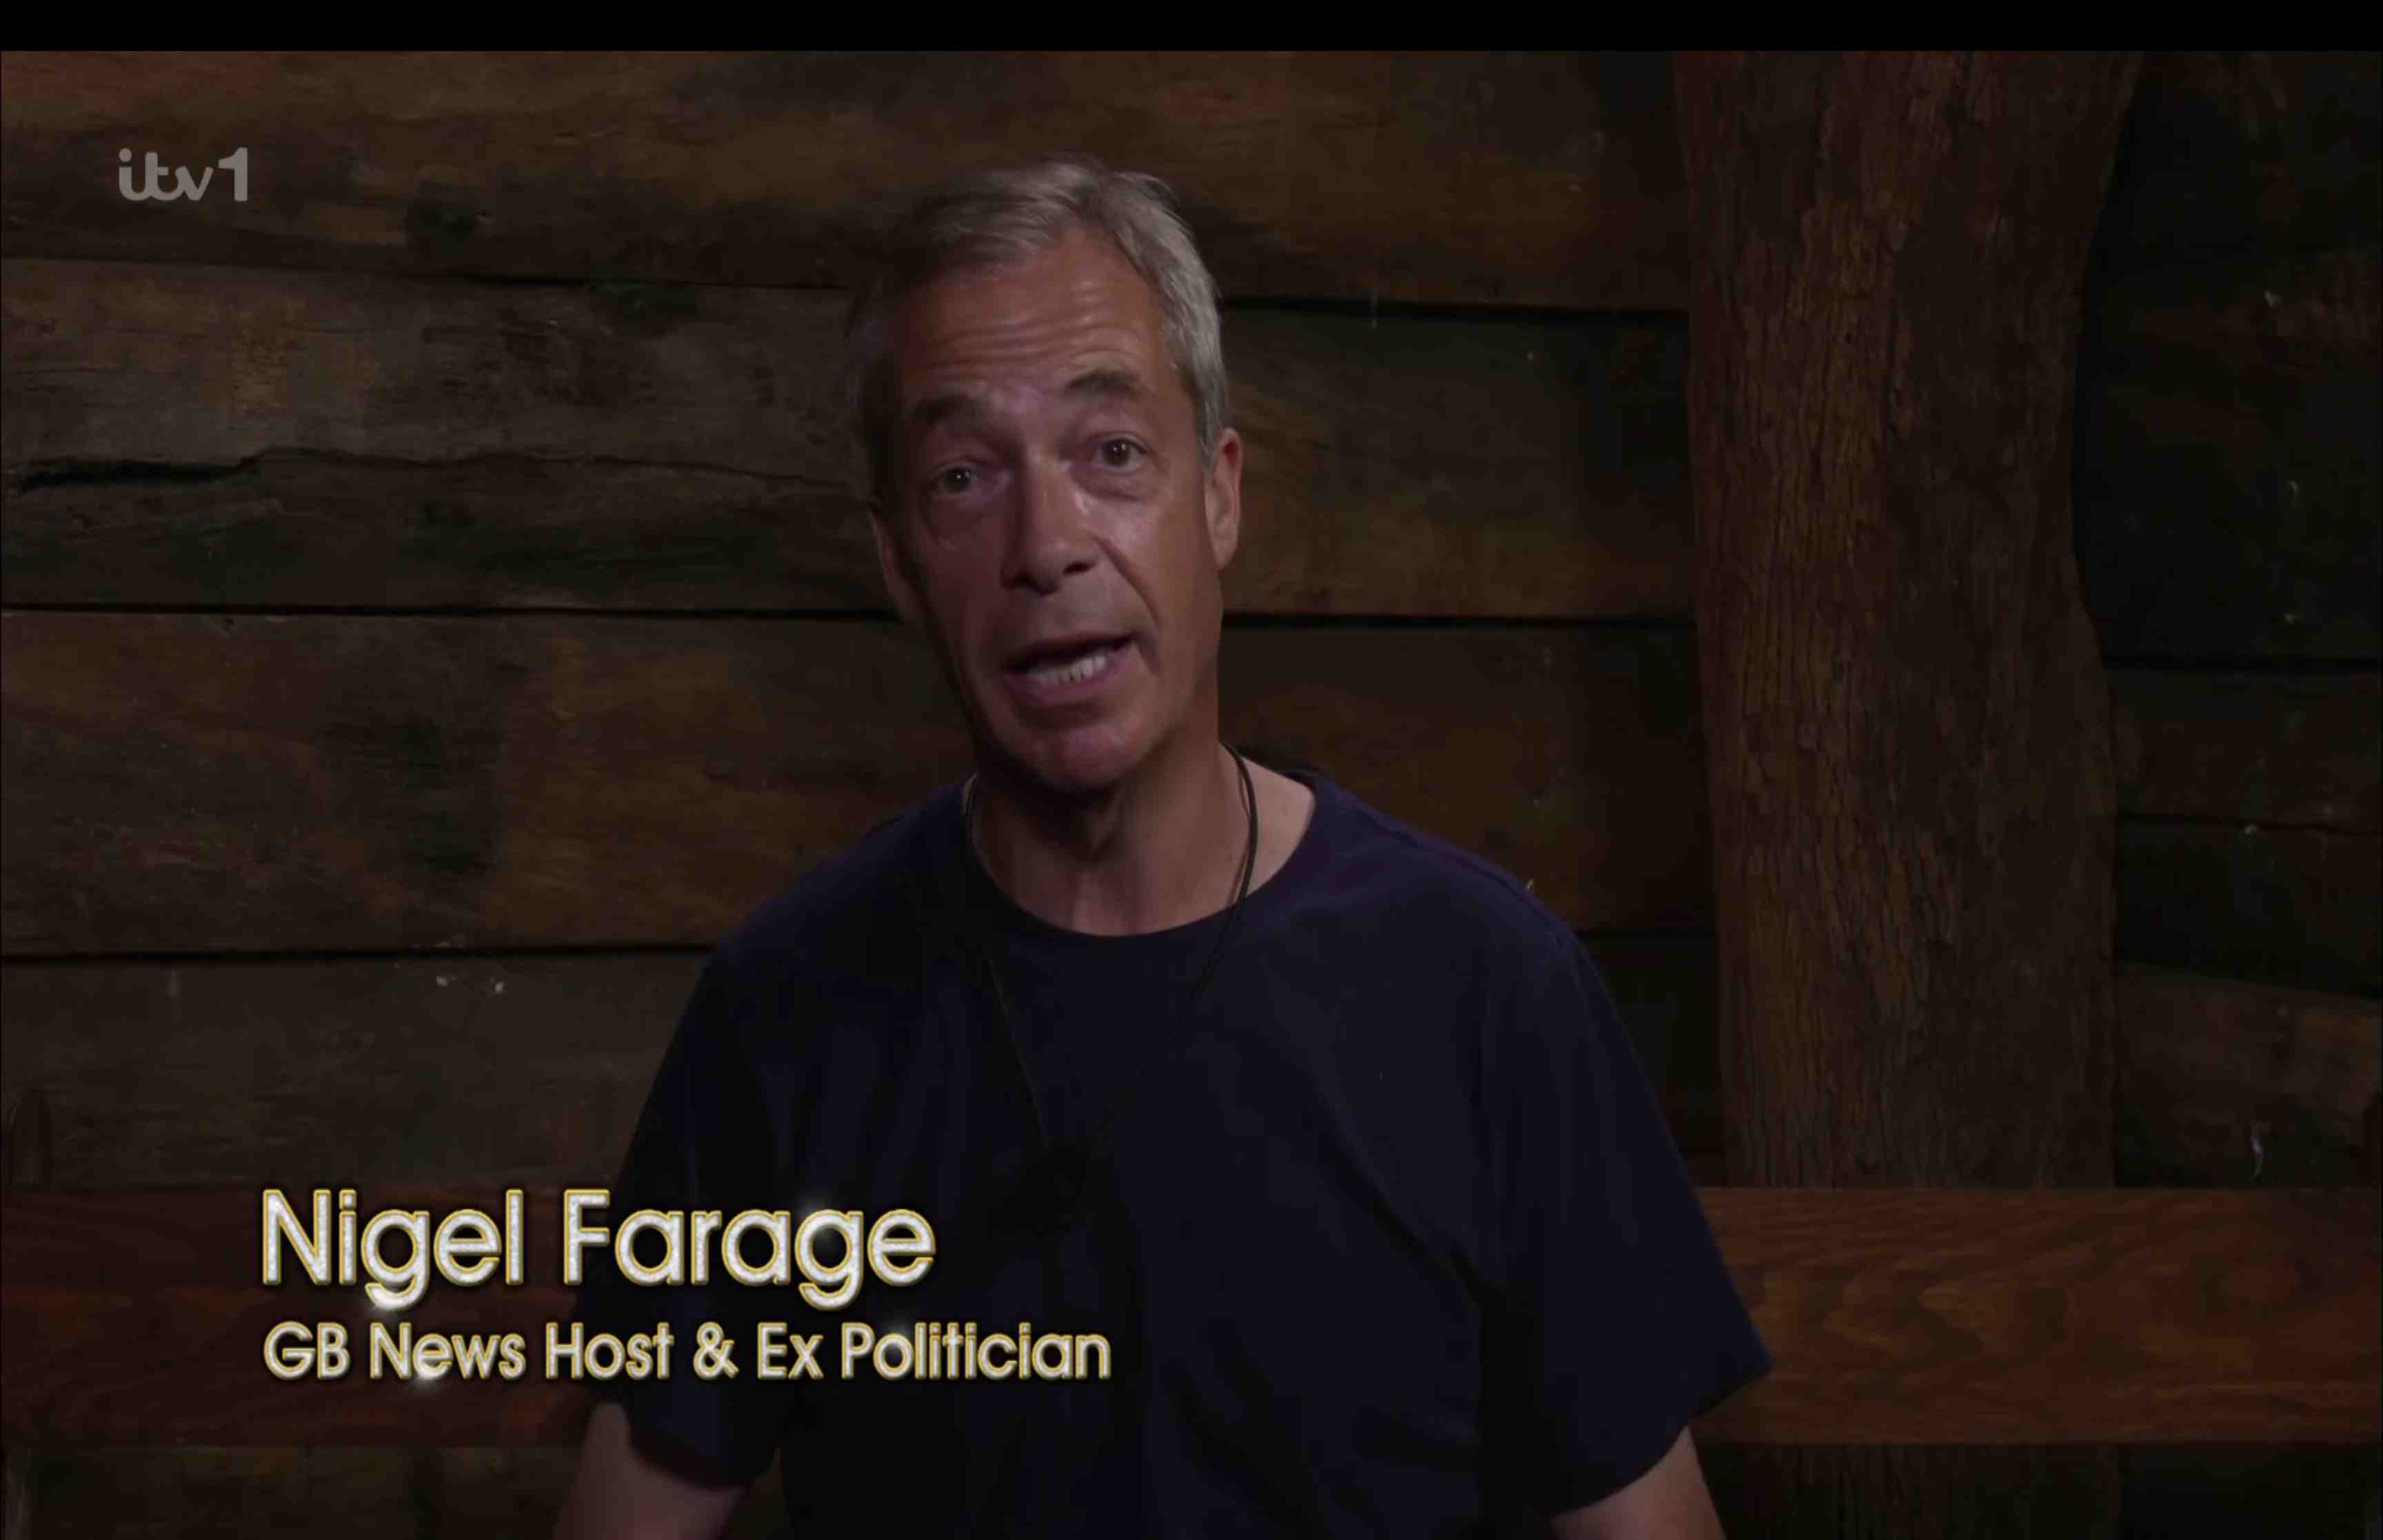 Ihre Freunde bemerkten, dass etwas nicht stimmte, als sie sich nicht mit Nigel Farage beschäftigte